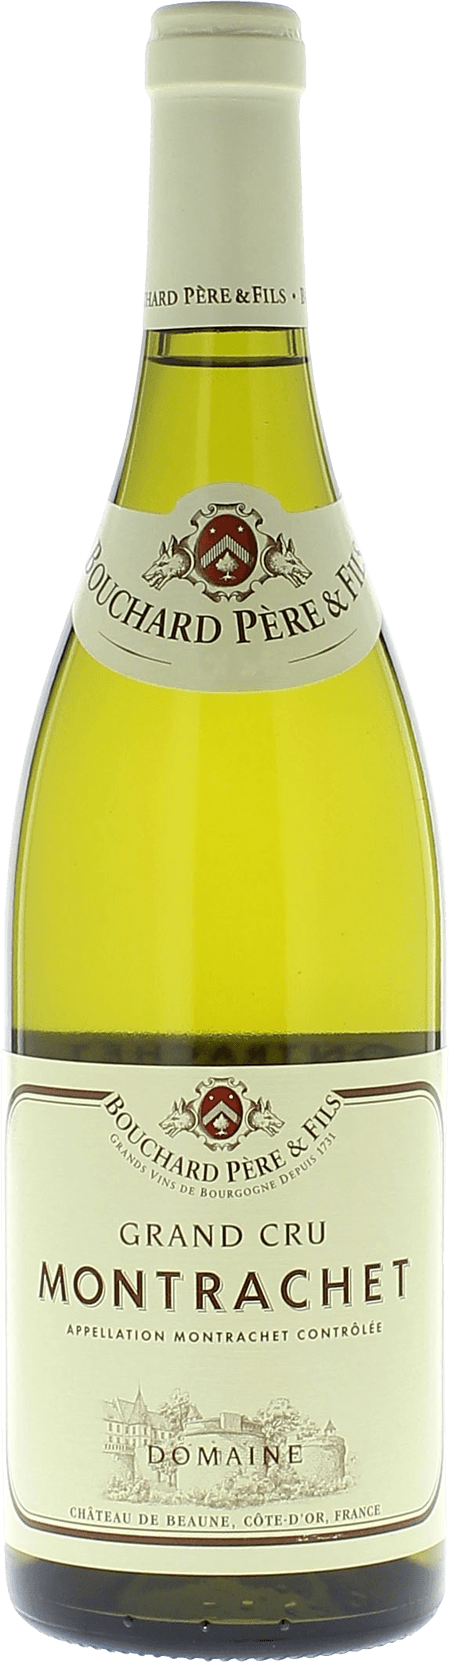 Montrachet grand cru 2015  BOUCHARD Pre et fils, Bourgogne blanc